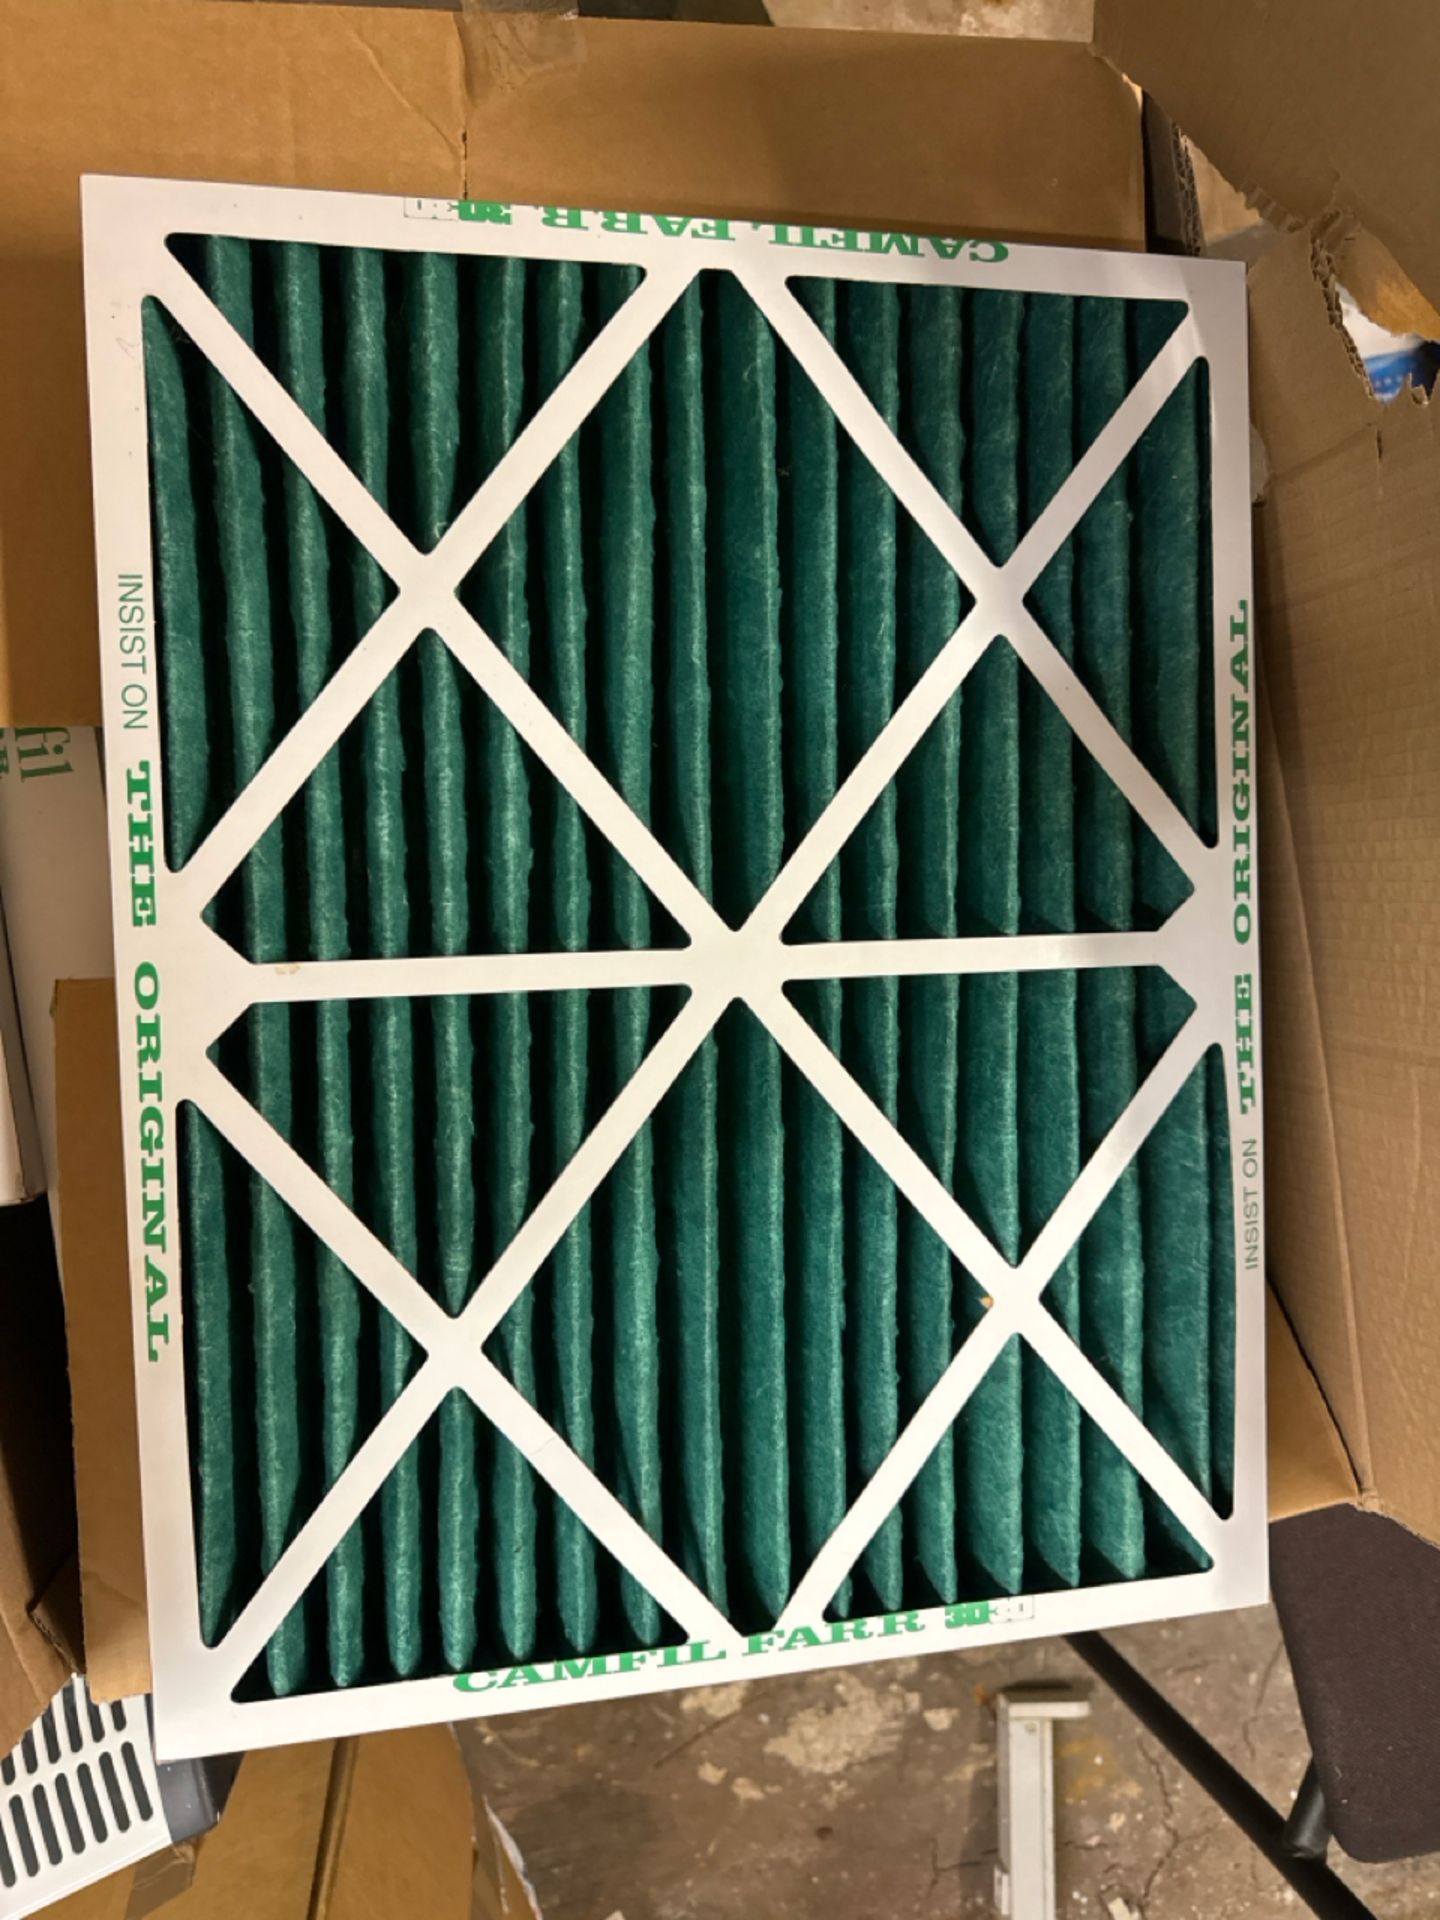 Camfil Farr 3030 air purifier x10